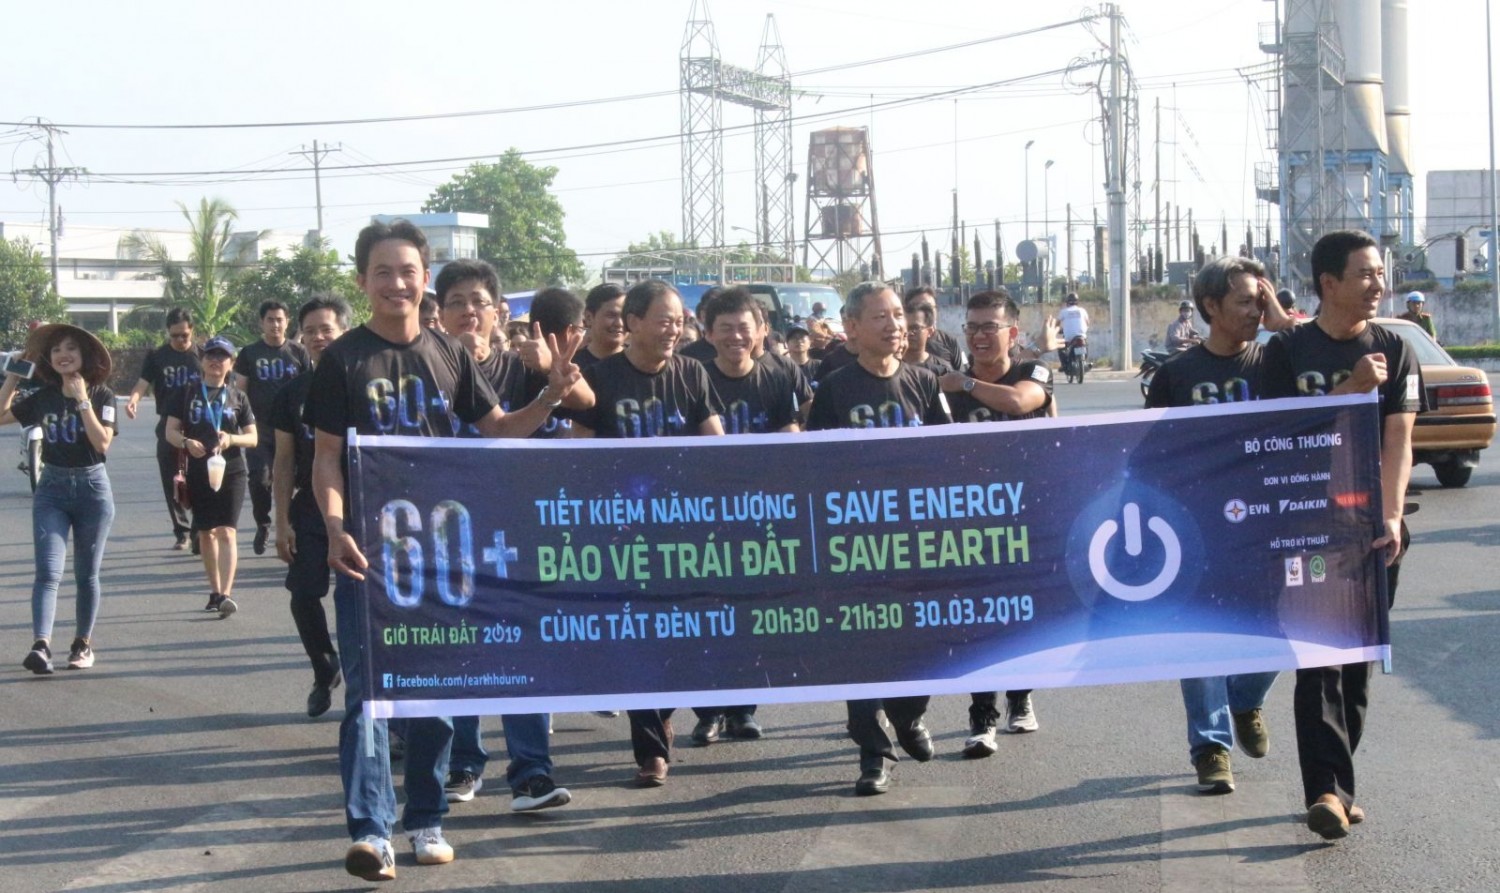 Đại diện lãnh đạo Tổng Công ty Phát điện 2, Công ty Nhiệt điện Cần Thơ và đông đảo nhân viên tham gia đi bộ tuyên truyền hưởng ứng Giờ trái đất năm 2019